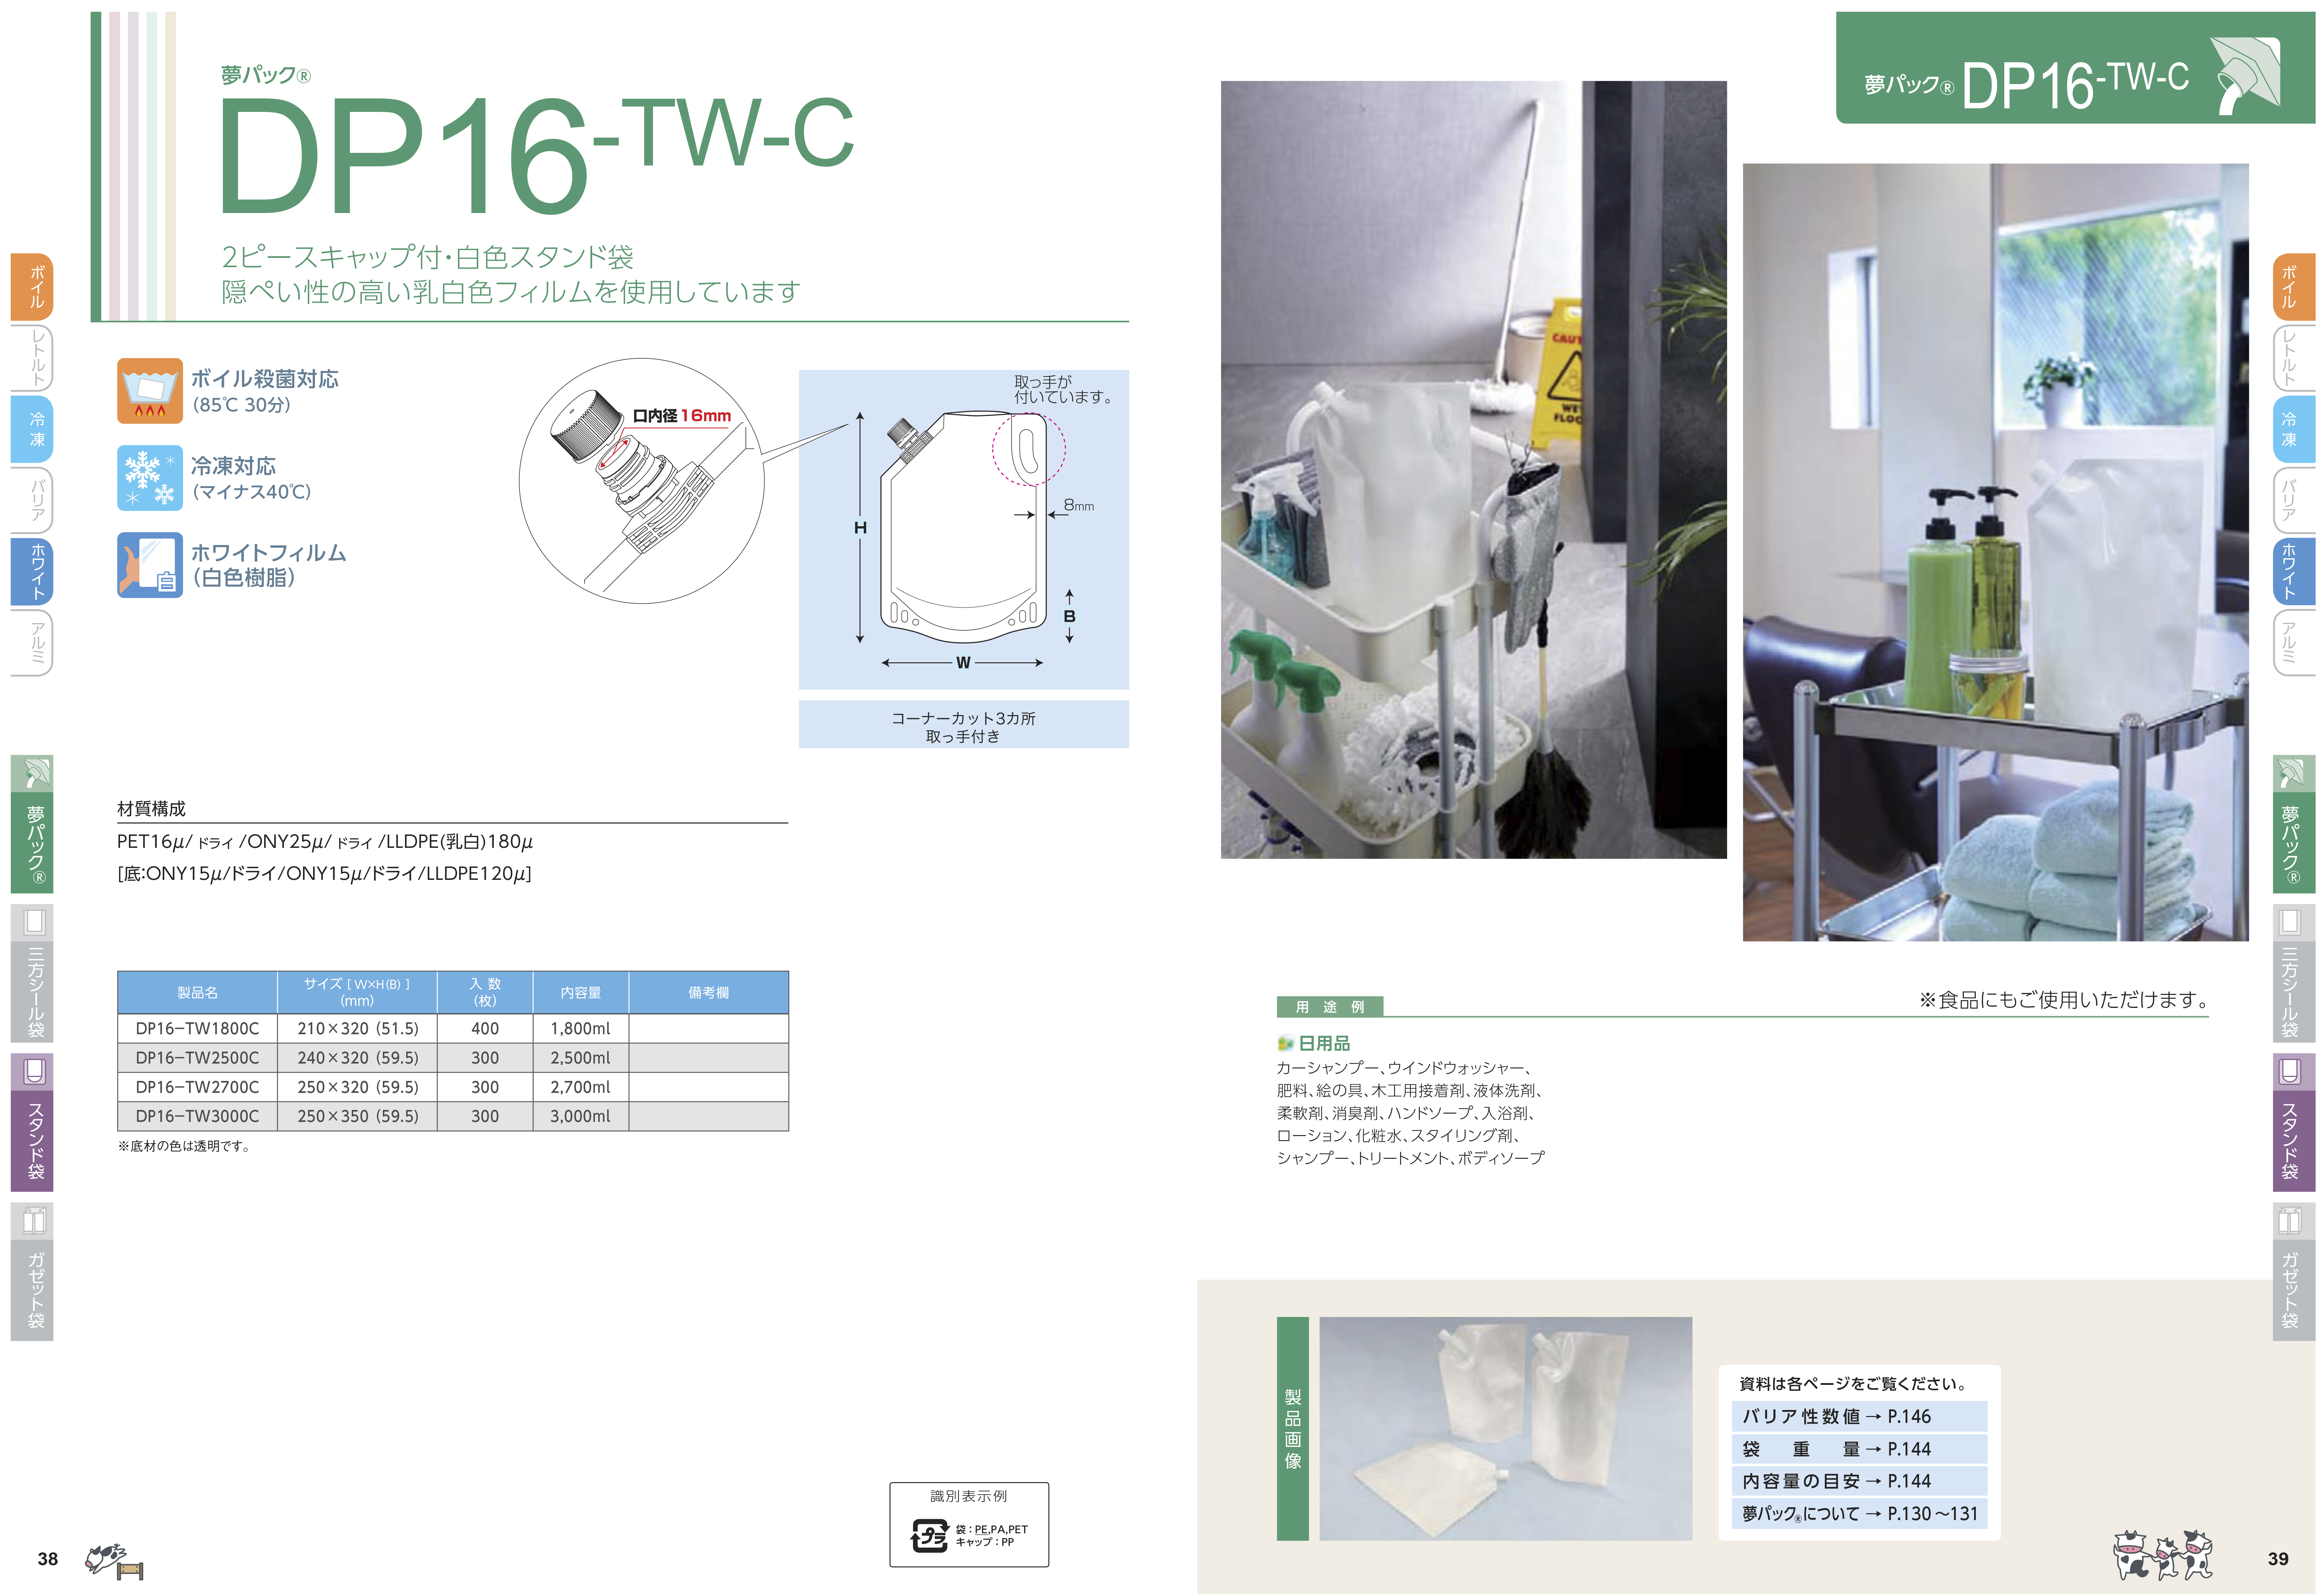 DP16-TW1800C商品画像2